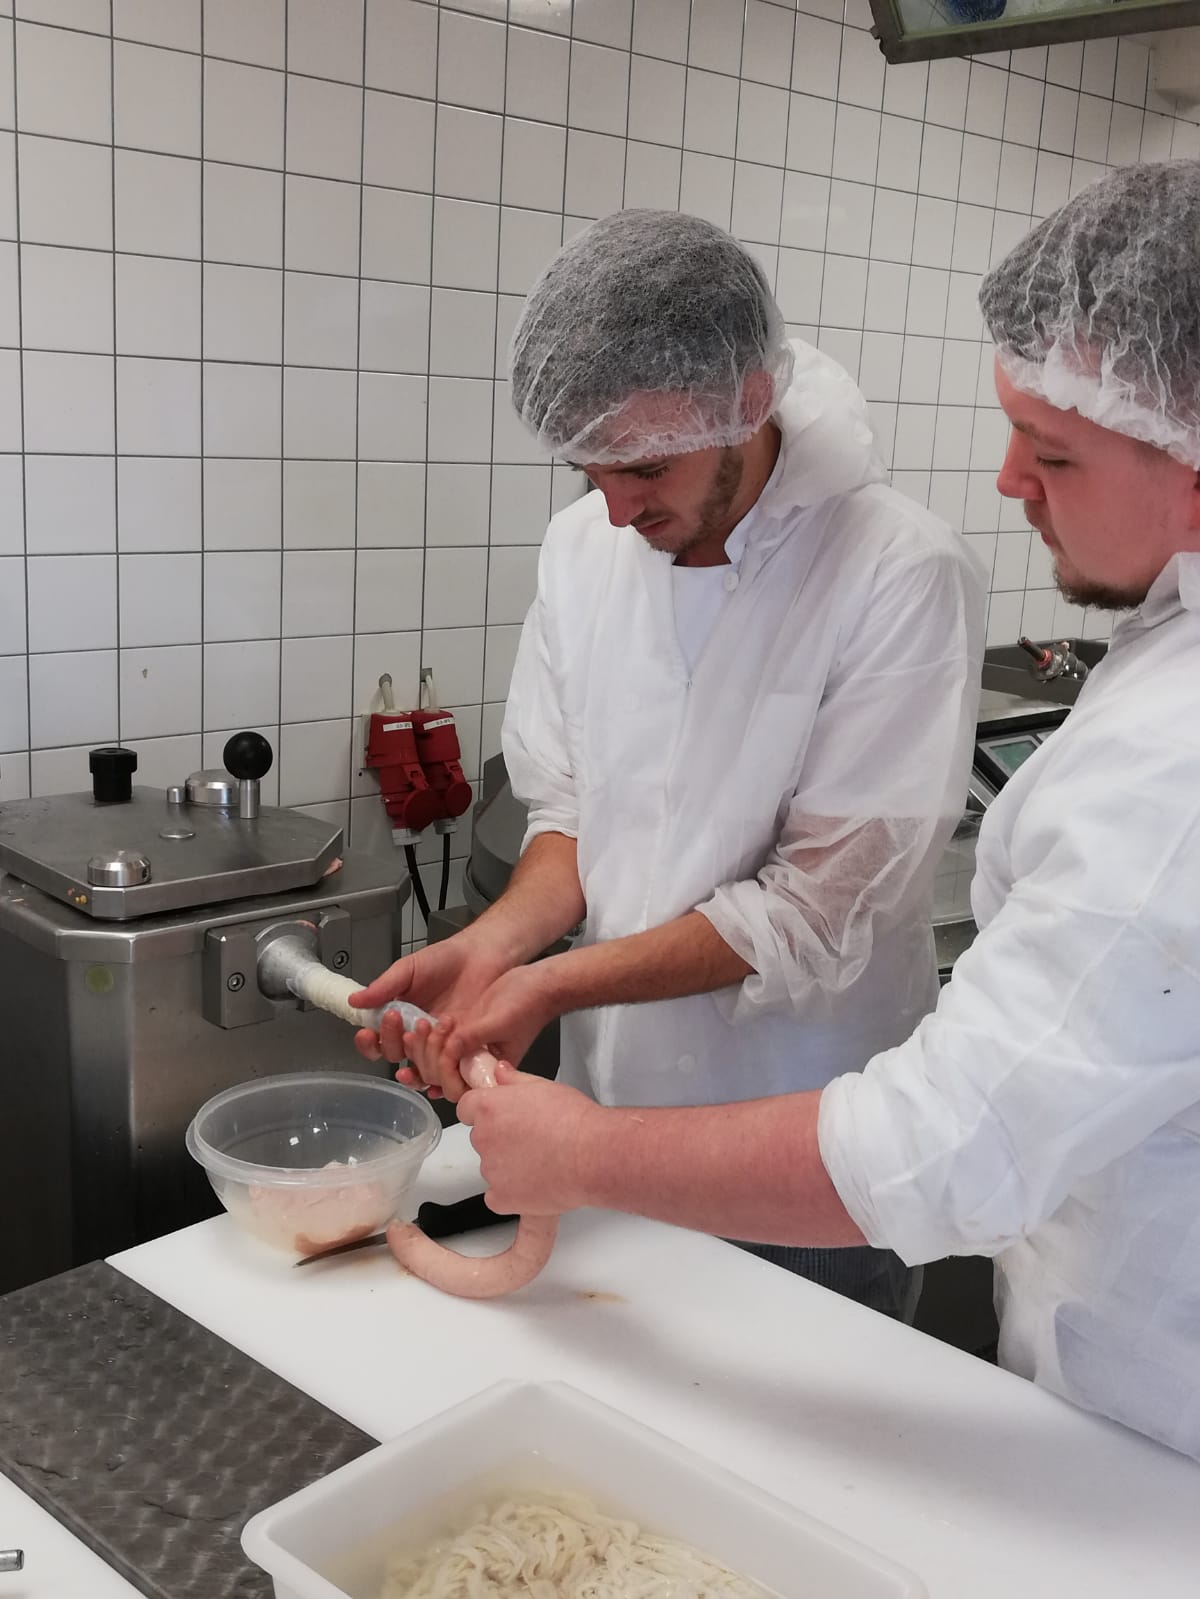 Proyecto con los alumnos de la escuela asociada: Producción de salchicha alemana